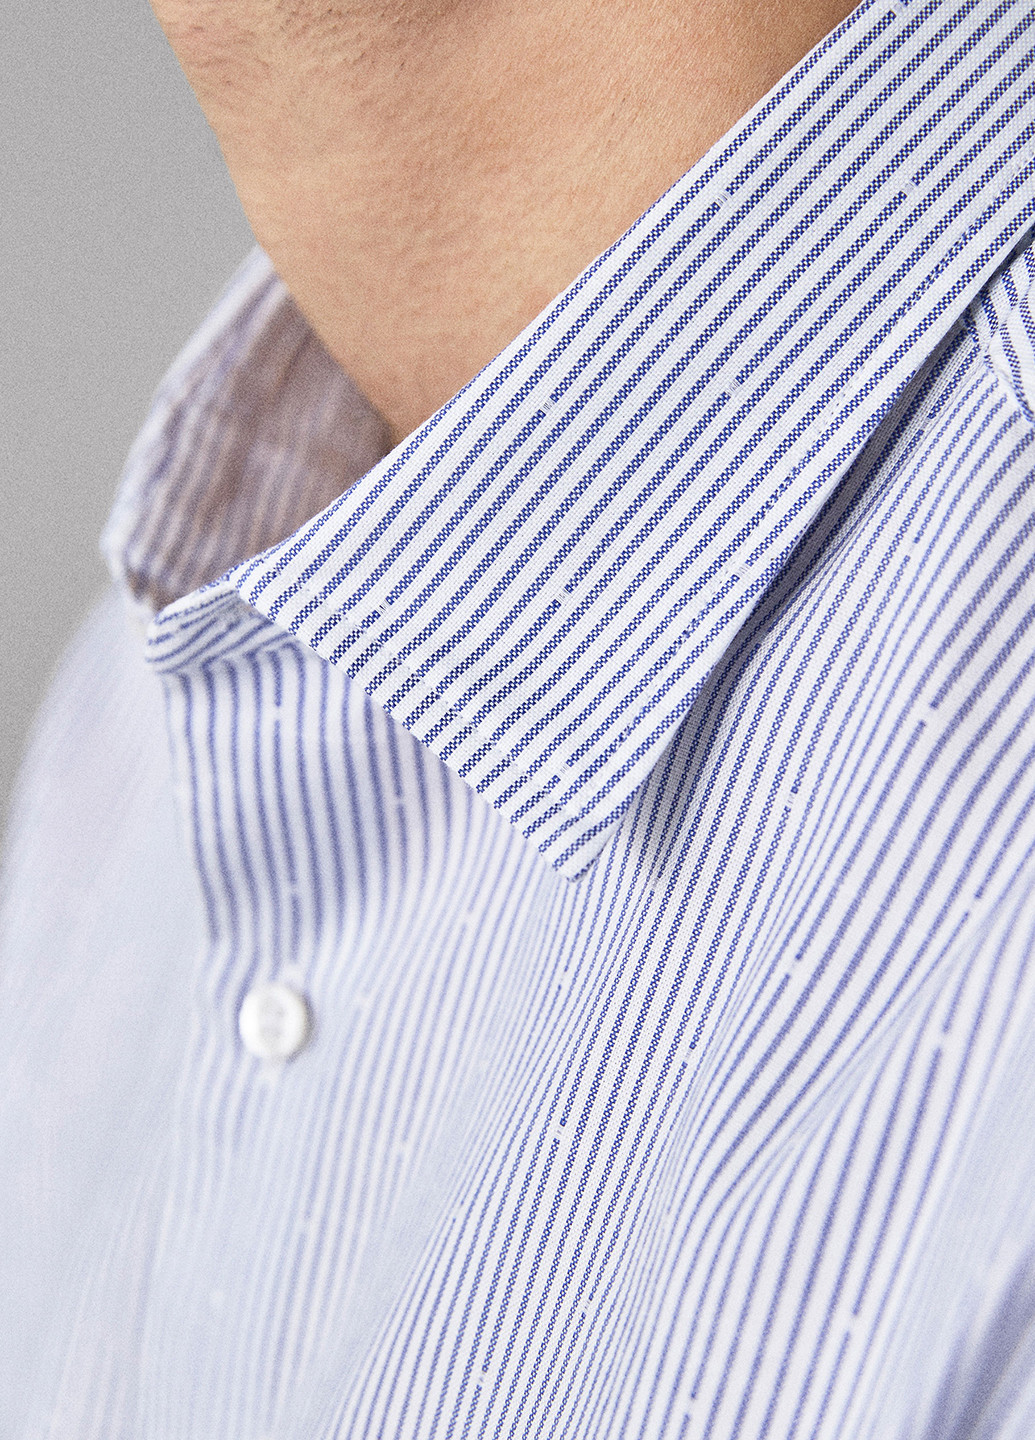 Сиреневая кэжуал рубашка в клетку Massimo Dutti с длинным рукавом